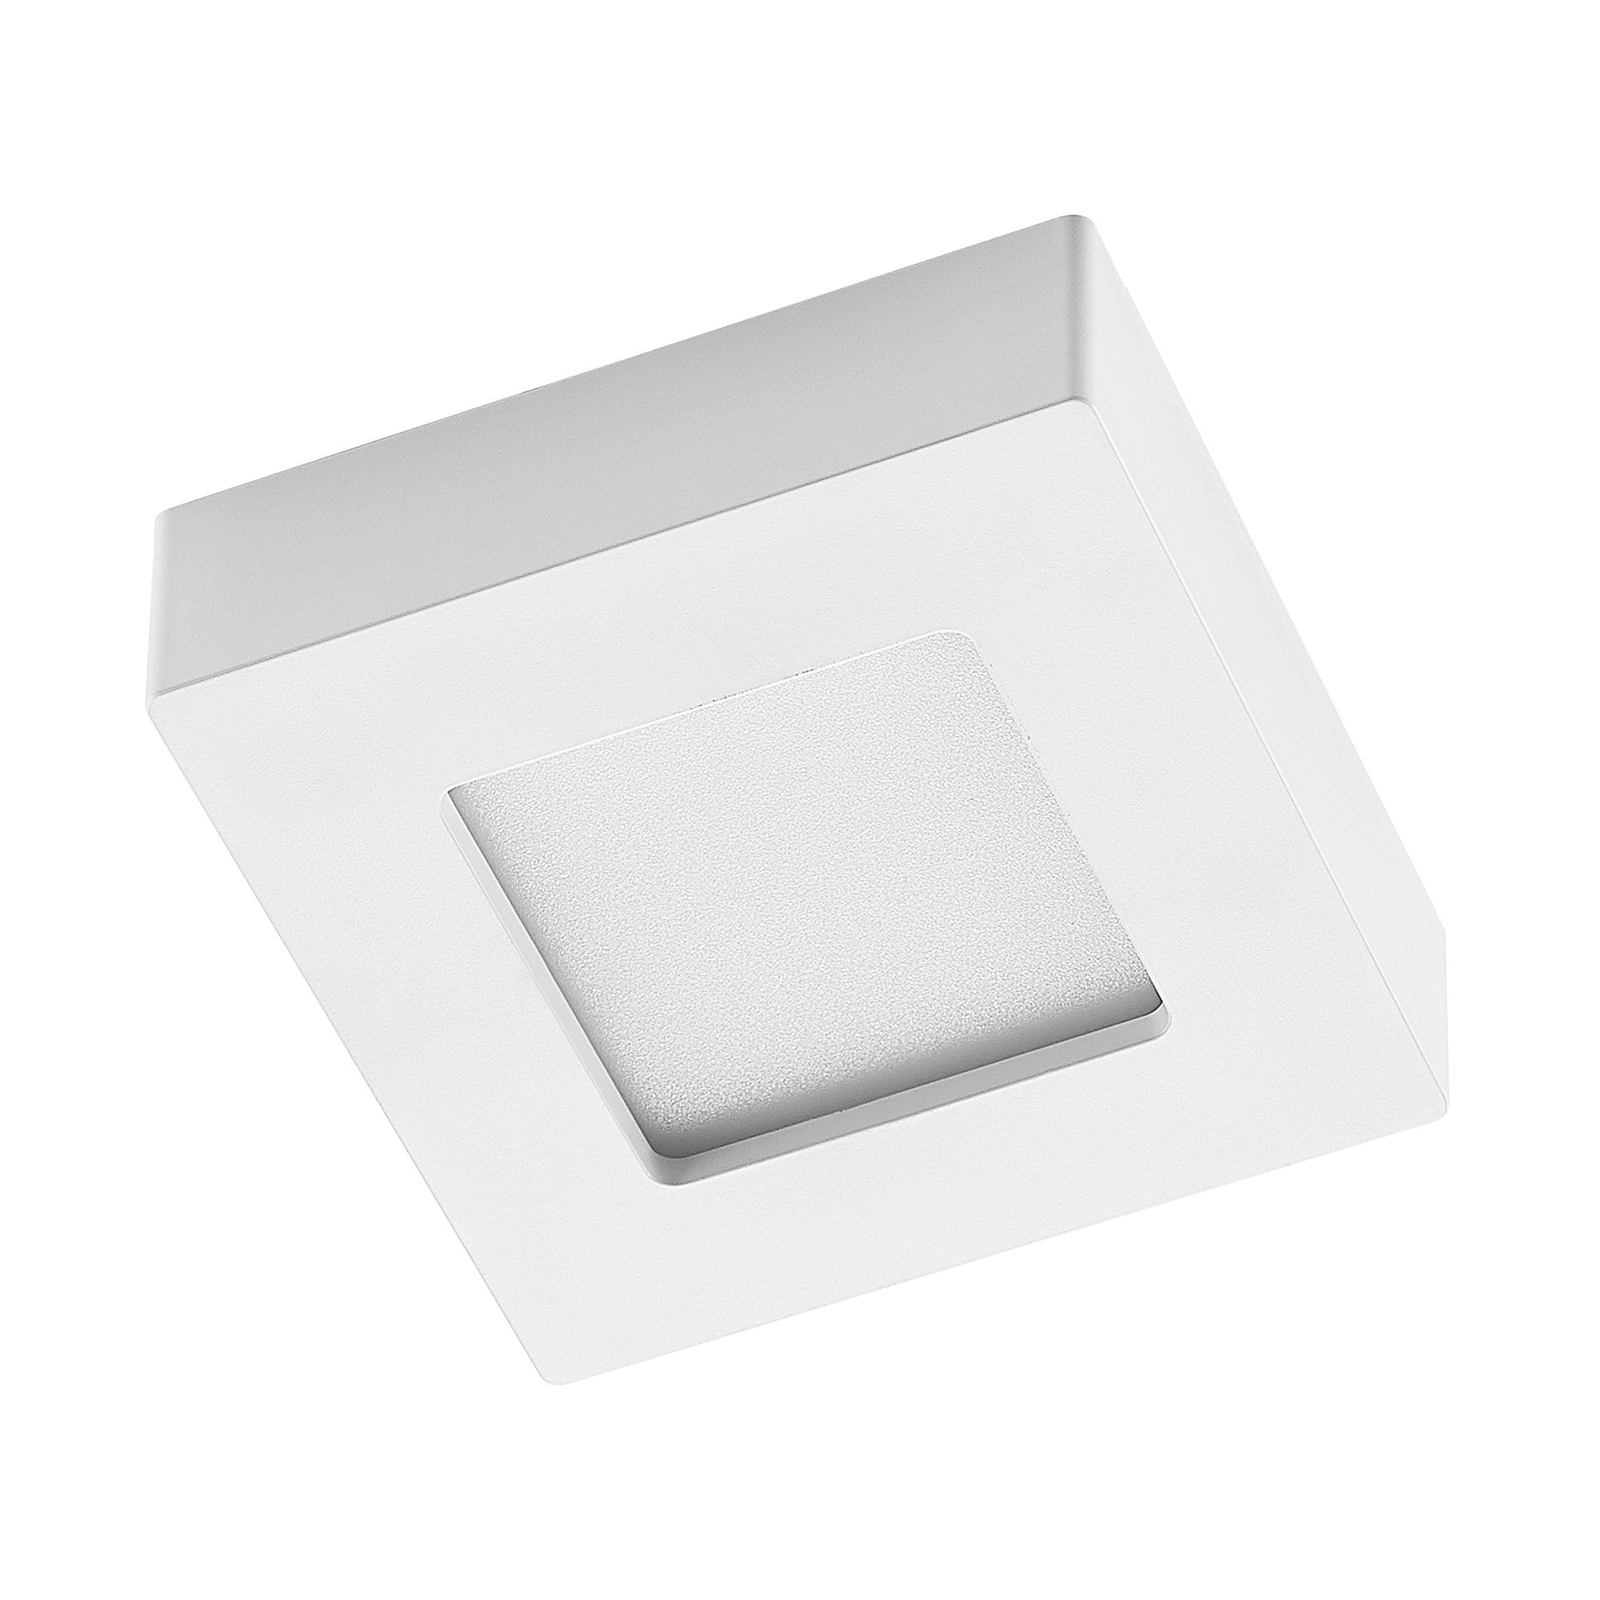 Prios Plafonnier LED Alette, blanc, 12,2 cm, intensité variable